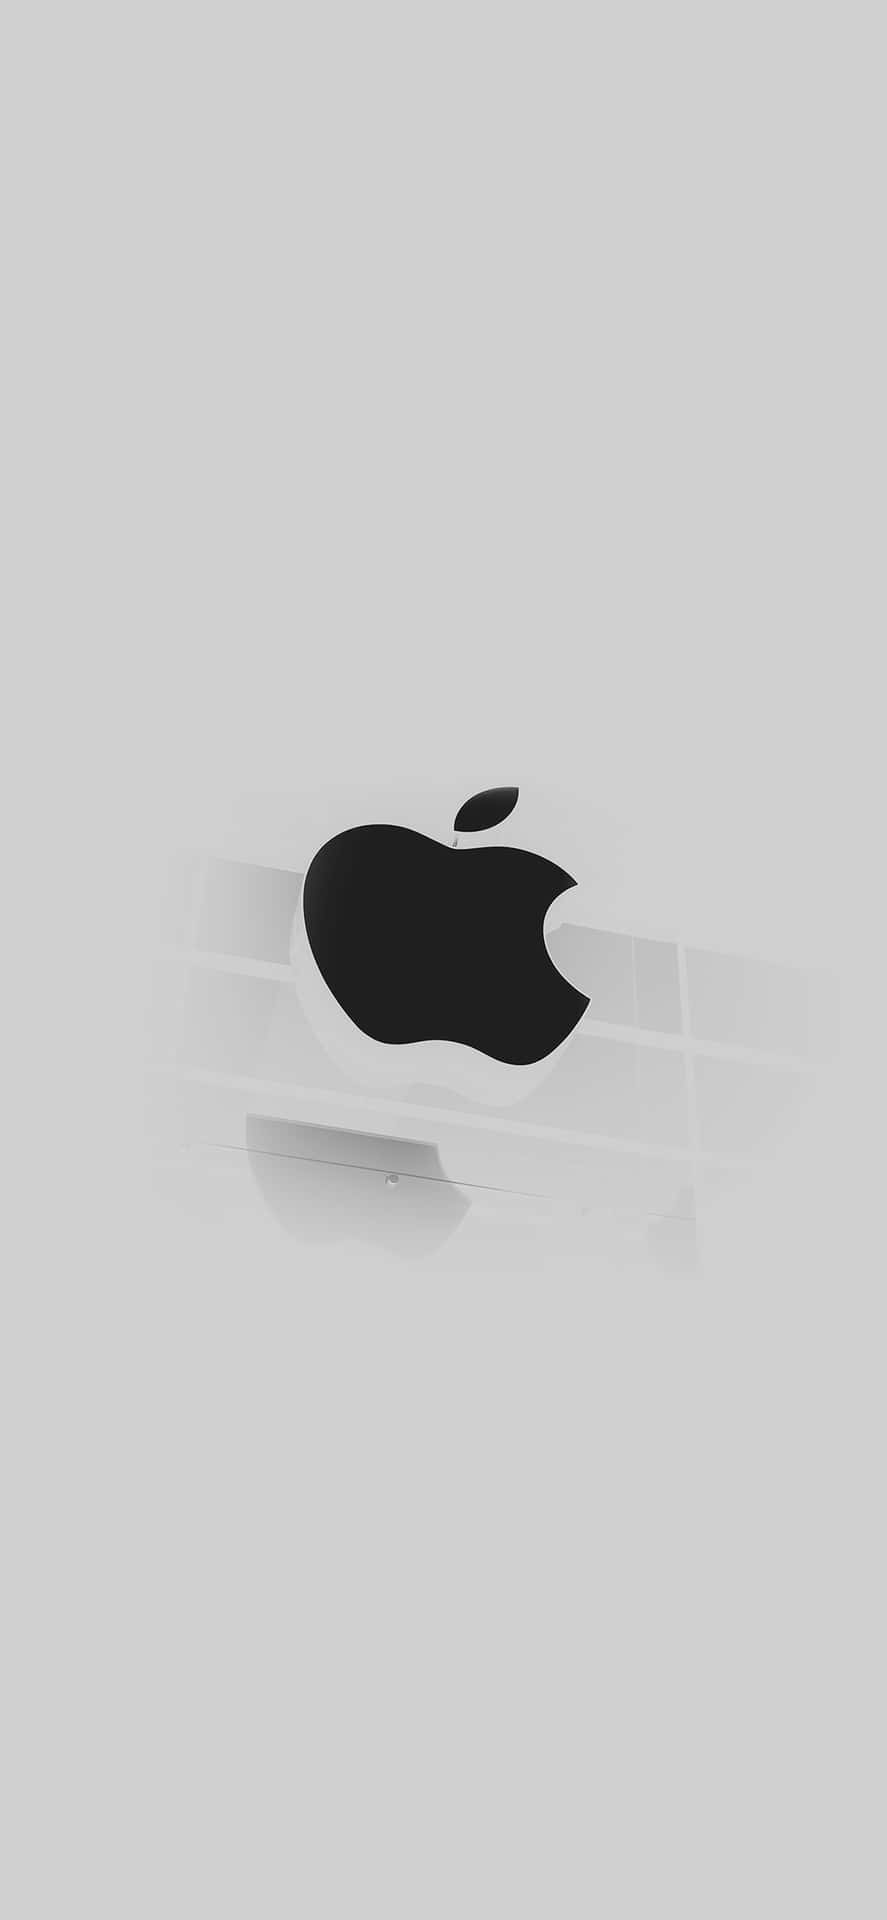 Abstratoiphone X Logotipo Da Apple. Papel de Parede